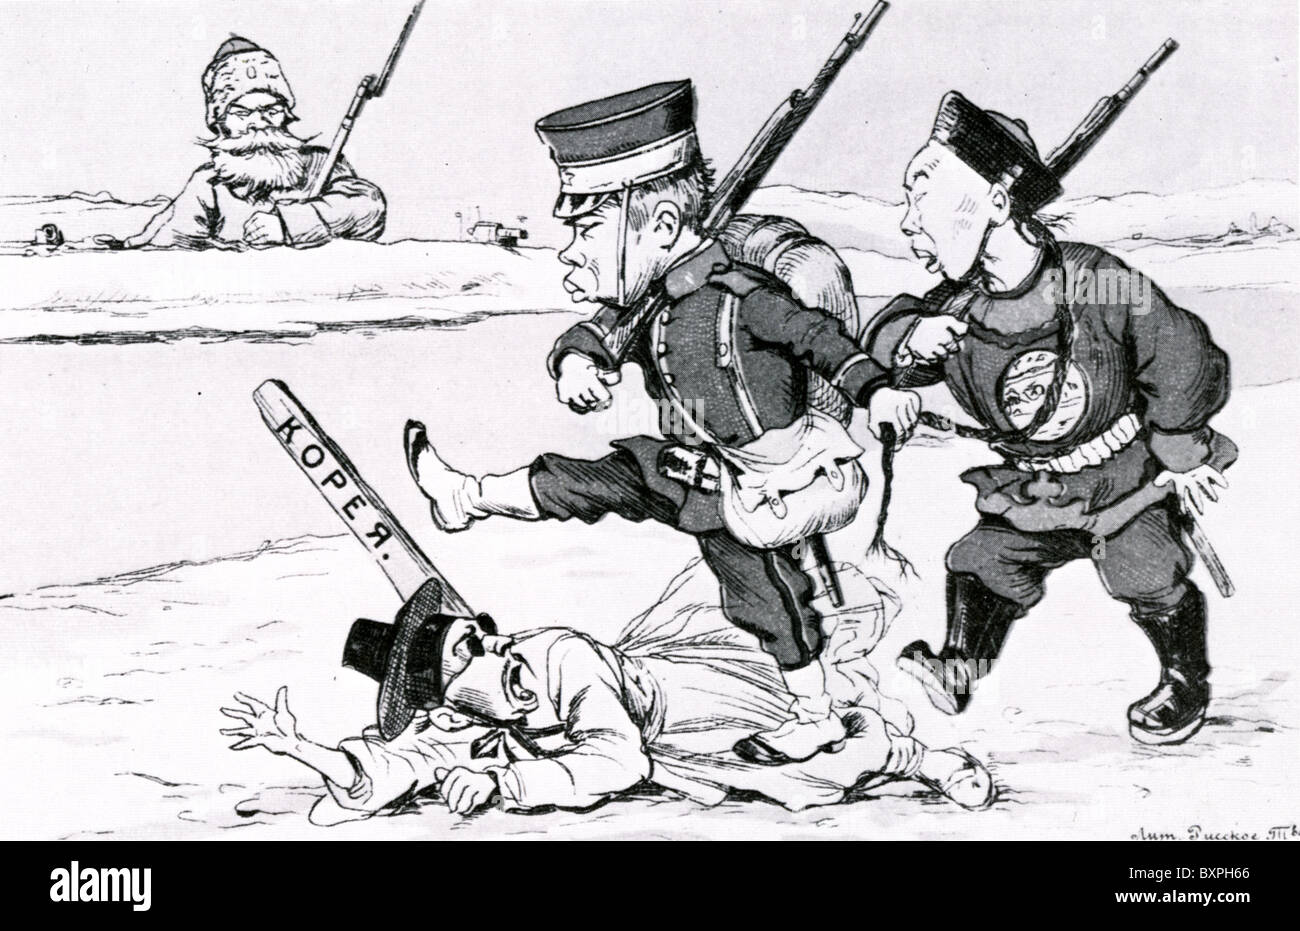 RUSSO-japanischer Krieg (1904-5) Russische Karikatur zeigt japanische Armee baathistischen Koreaner, während Russland nicht gleichgültig bleibt Stockfoto